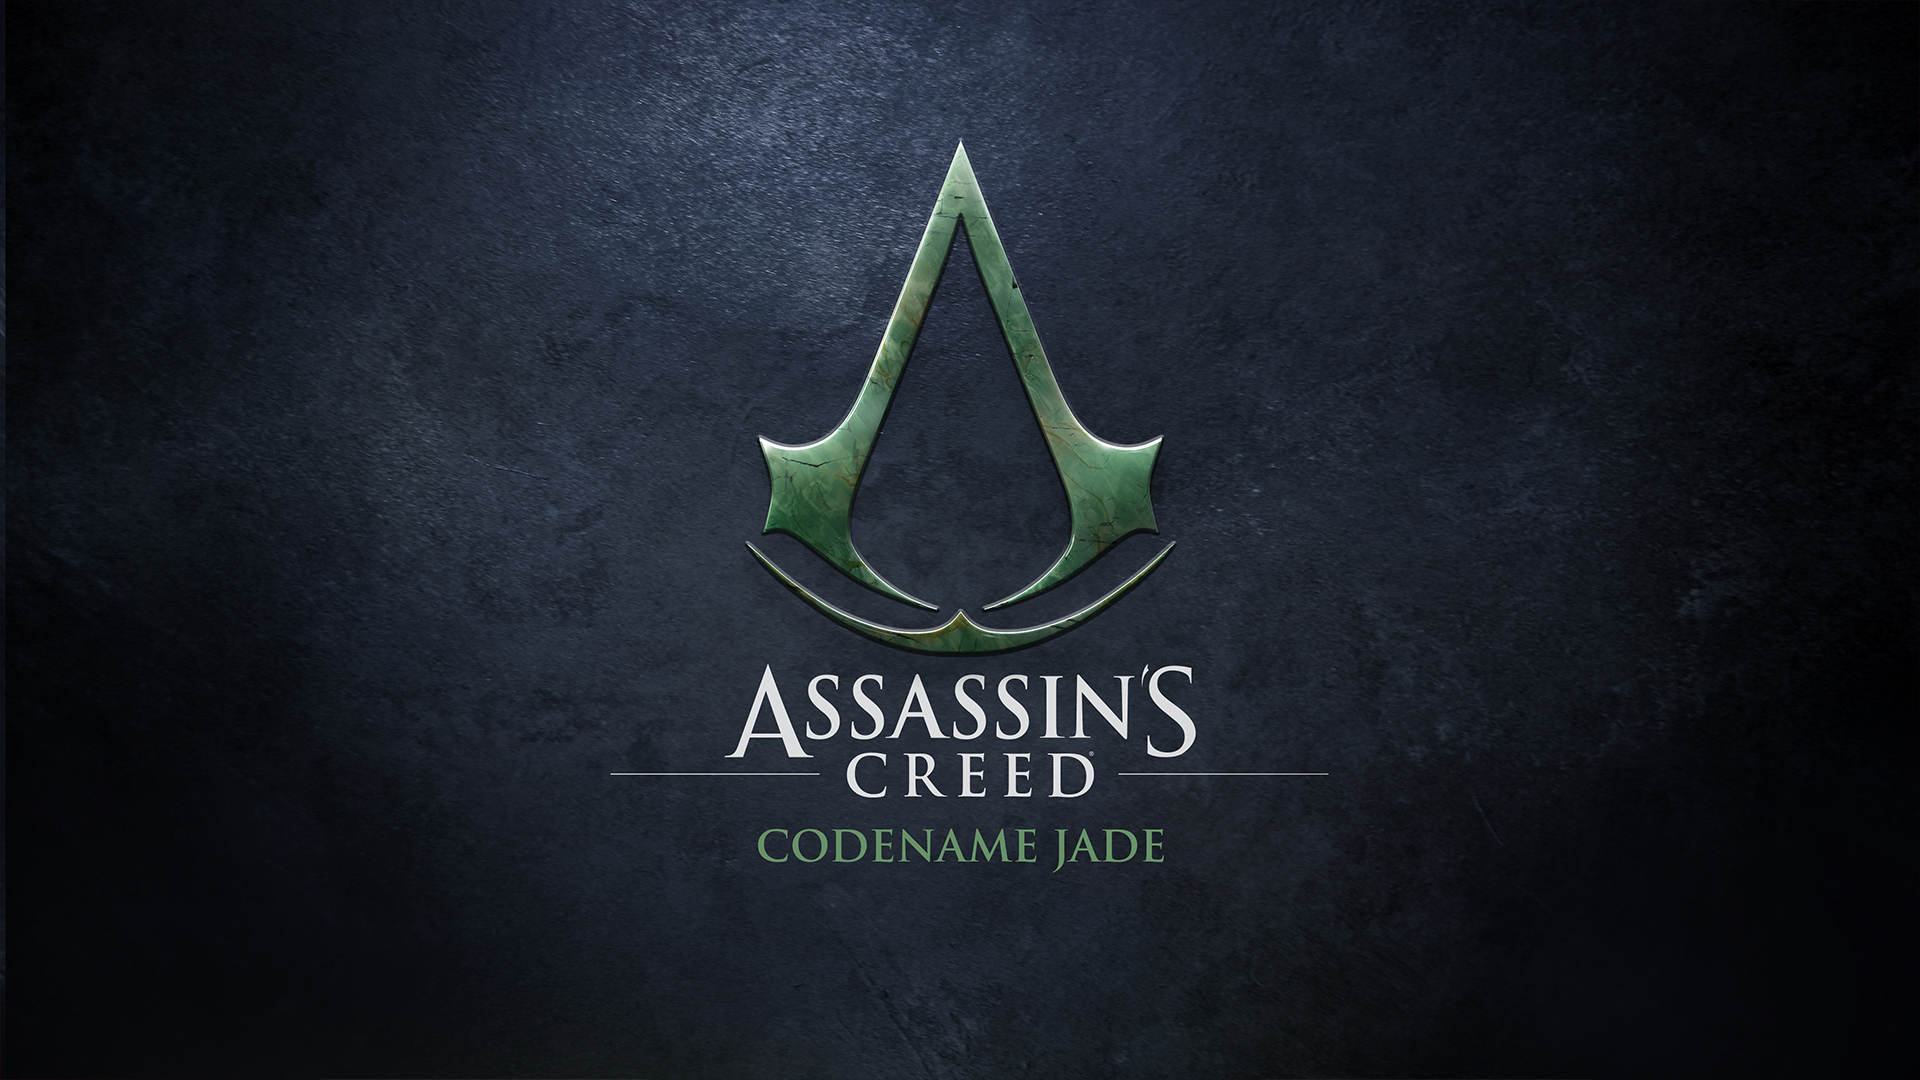 Assassin's Creed Nombre en clave Jade